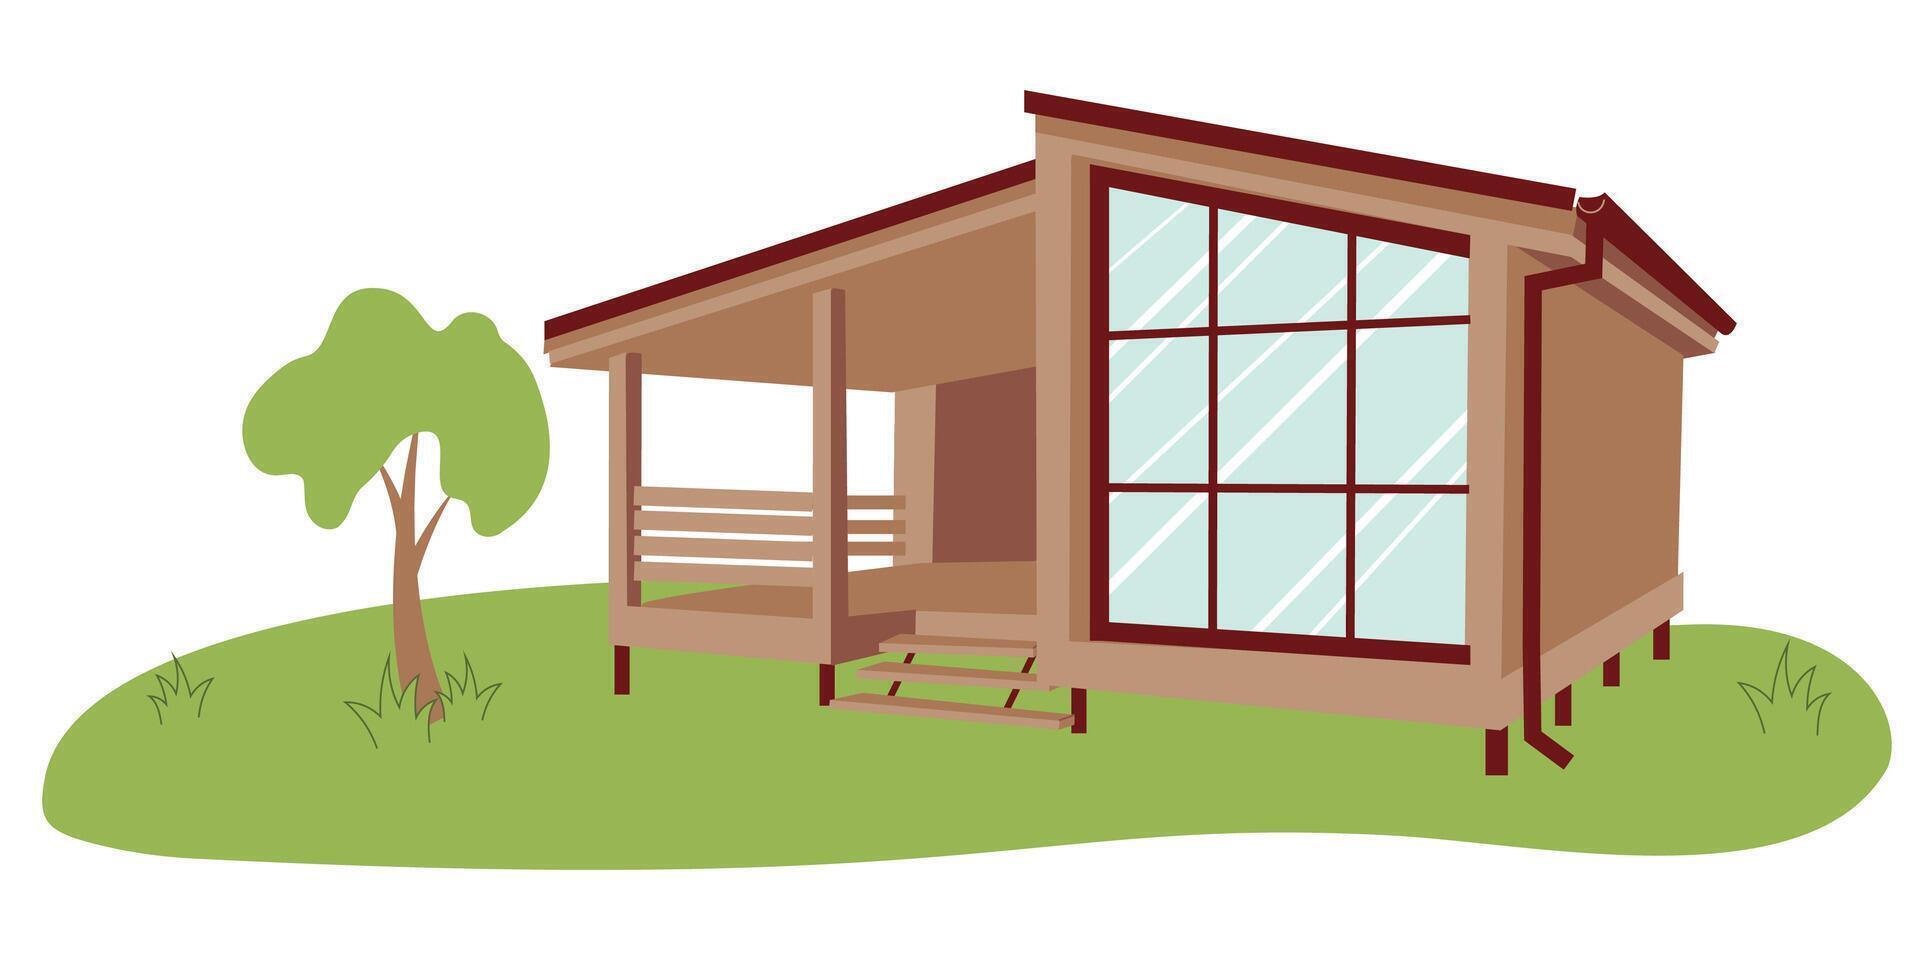 Modular home. Wooden eco-friendly modular house. New modular housing concept. Modular homes exterior designs vector